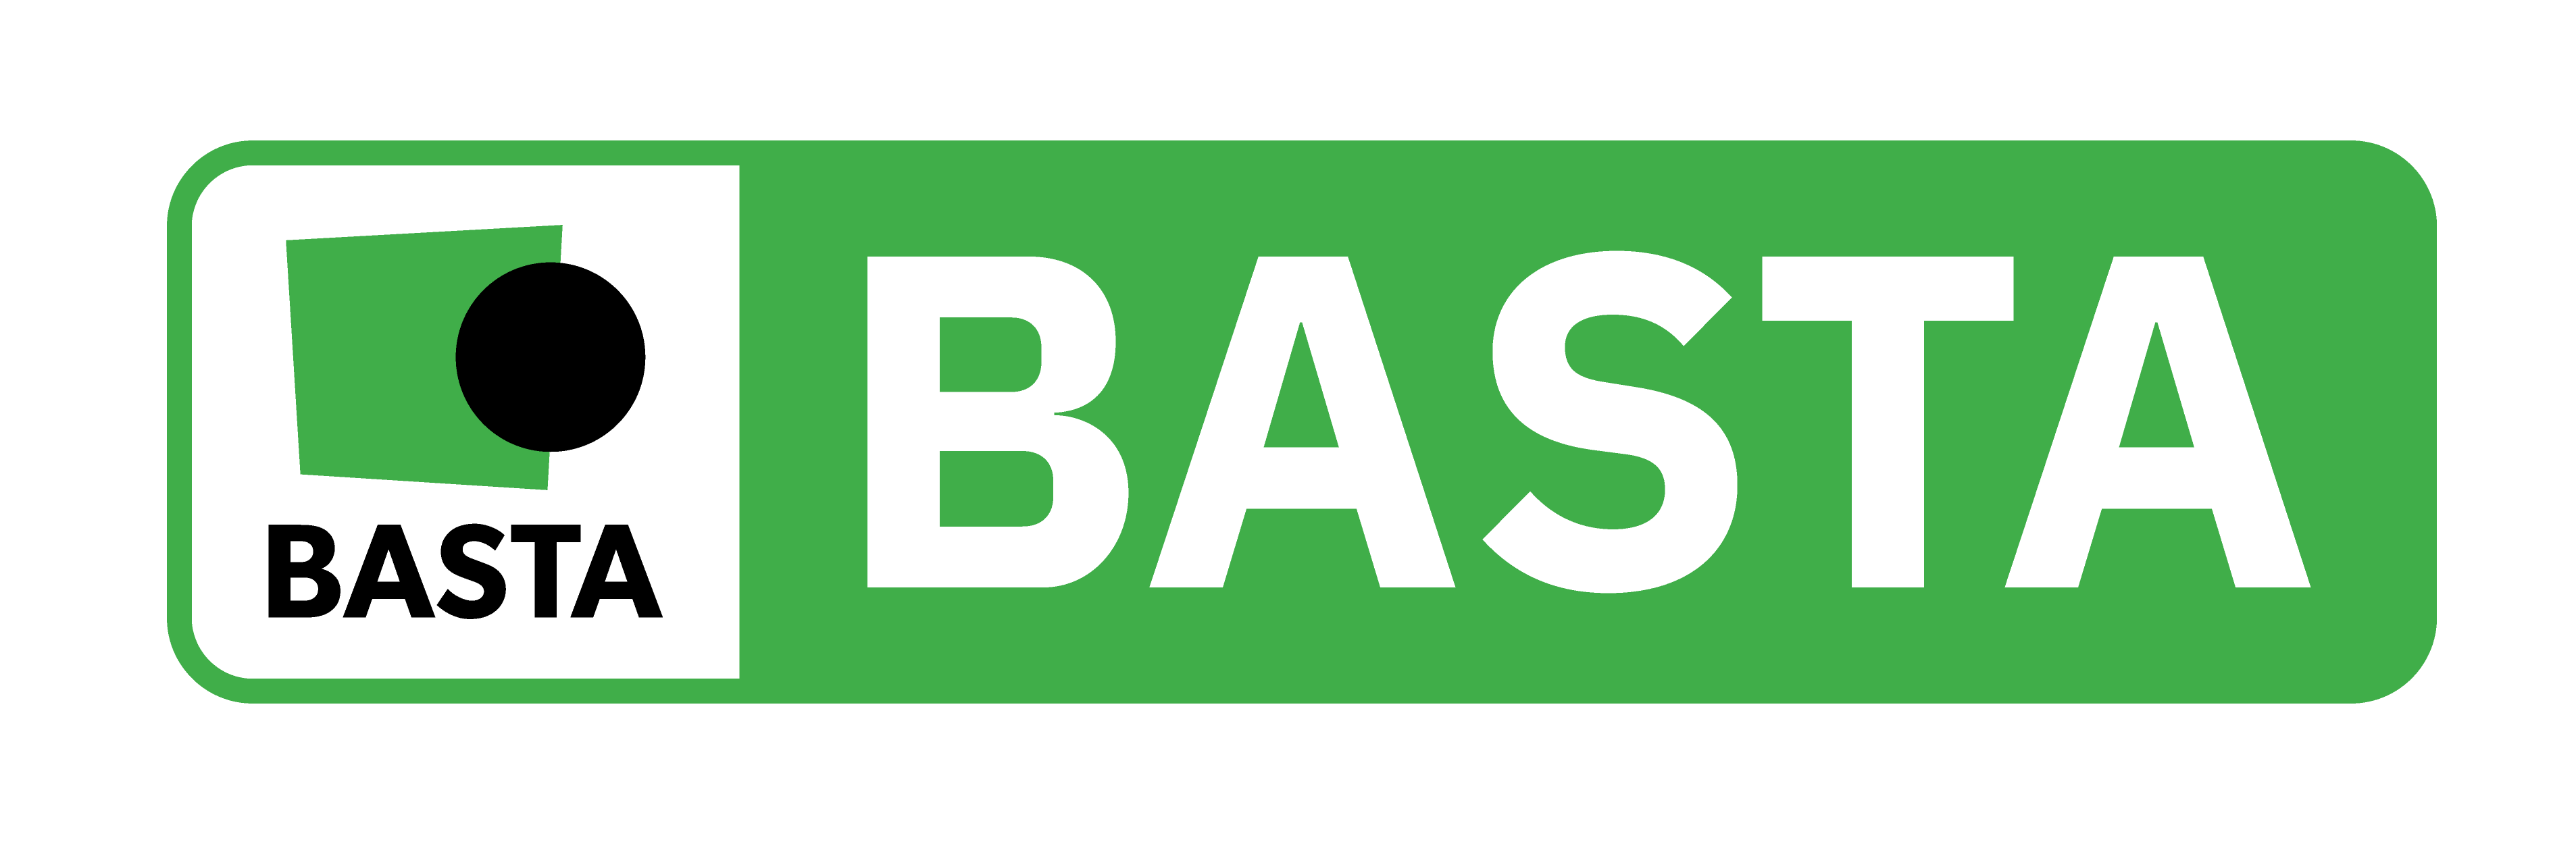 BASTA-nivån är den högsta nivån i systemet. Produkter som uppfyller denna nivå uppfyller kriterier som begränsar utfasningsämnen och riskminskningsämnen enligt Kemikalieinspektionens ”PRIO-verktyg”.